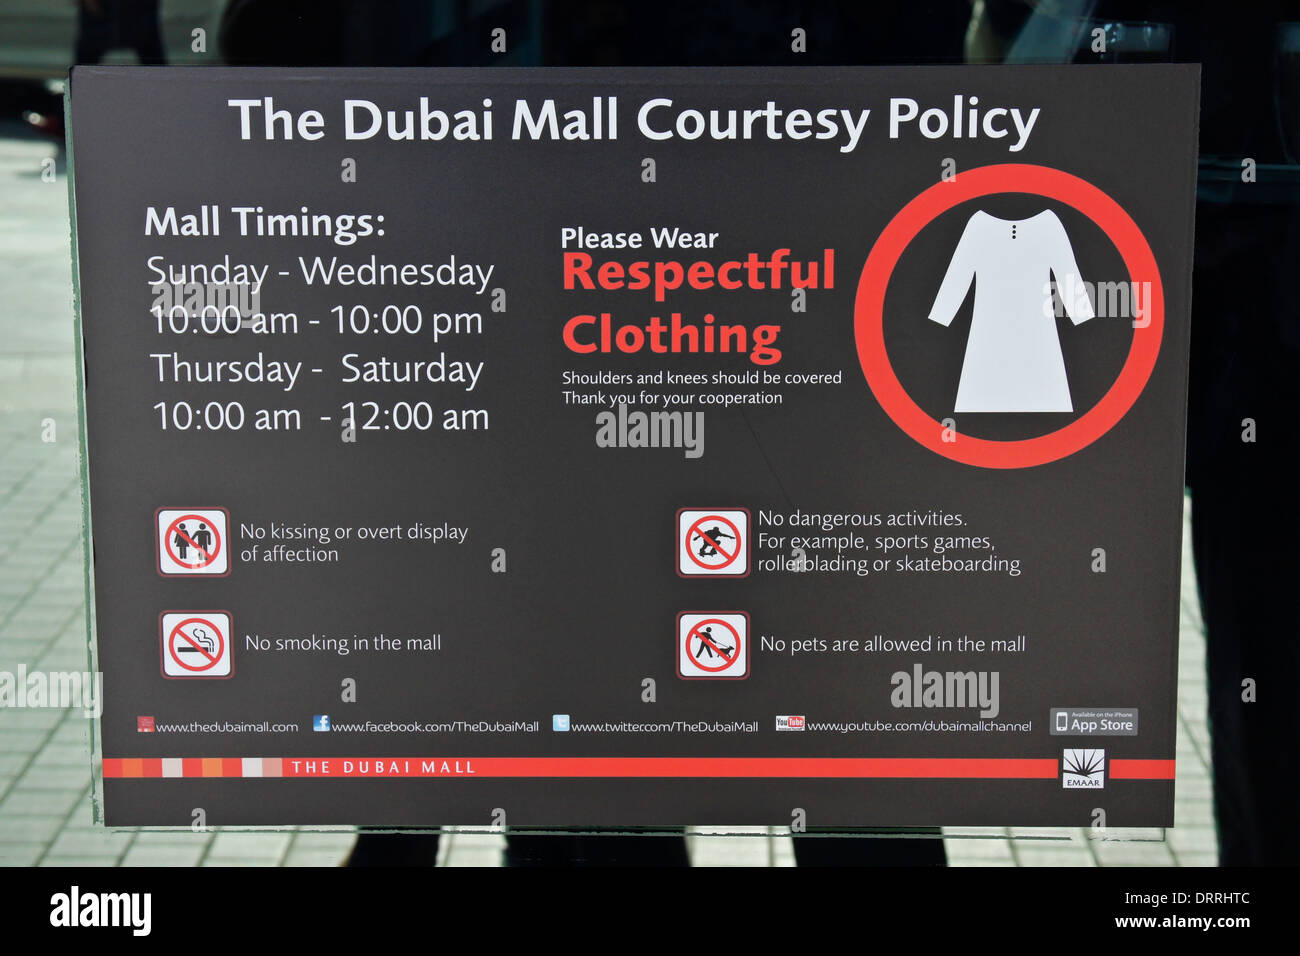 Dubai Mall Courtesy Policy, sign posted at mall entrance, Dubai, UAE Stock Photo